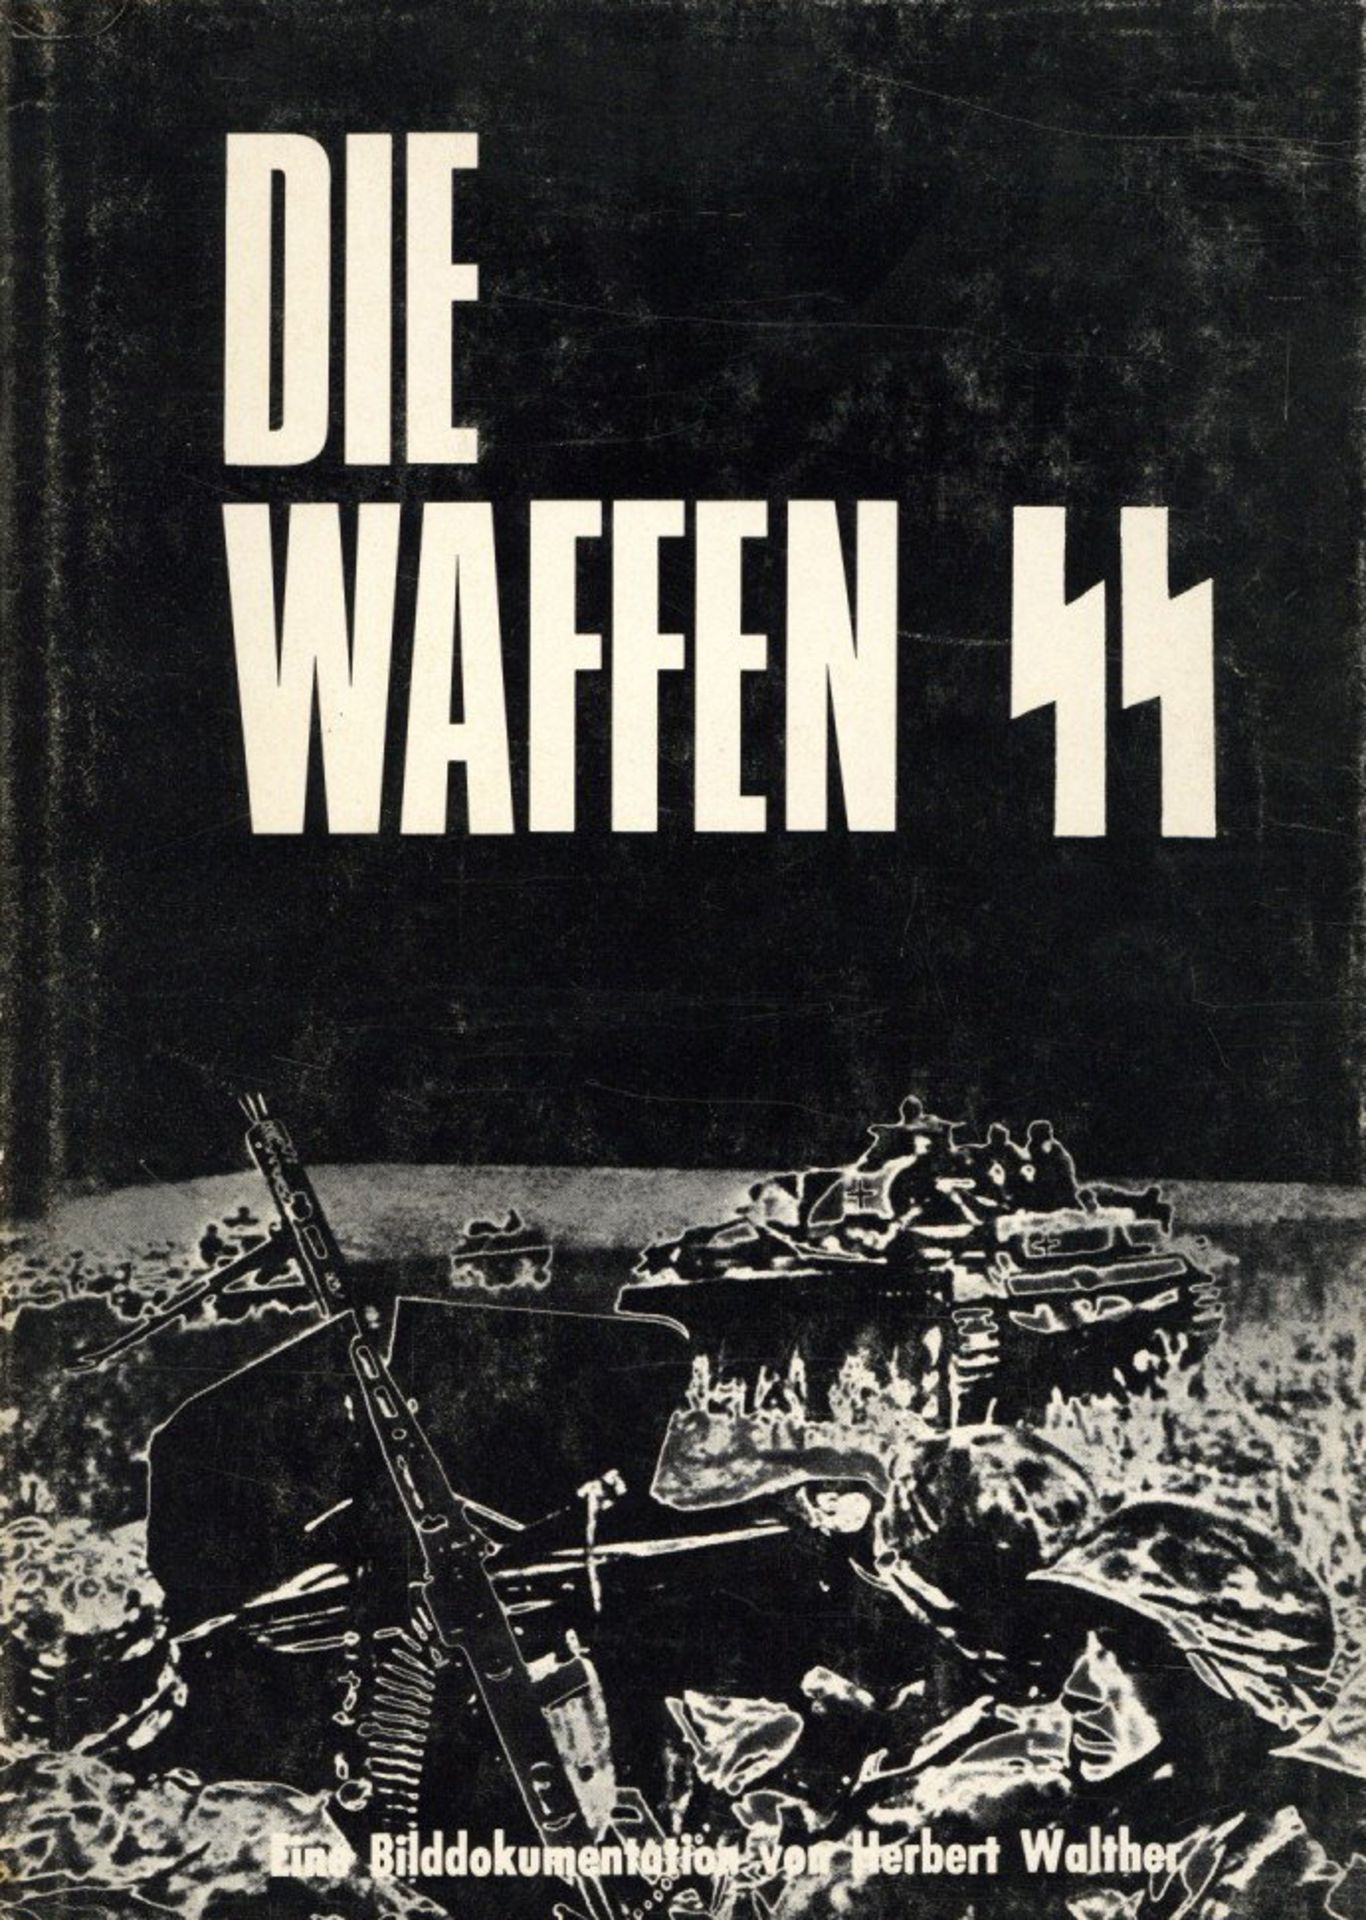 Buch WK II Die Waffen-SS eine Bilddokumentation von Walther, Herbert 1970, Verlag Ahnert Echzell,